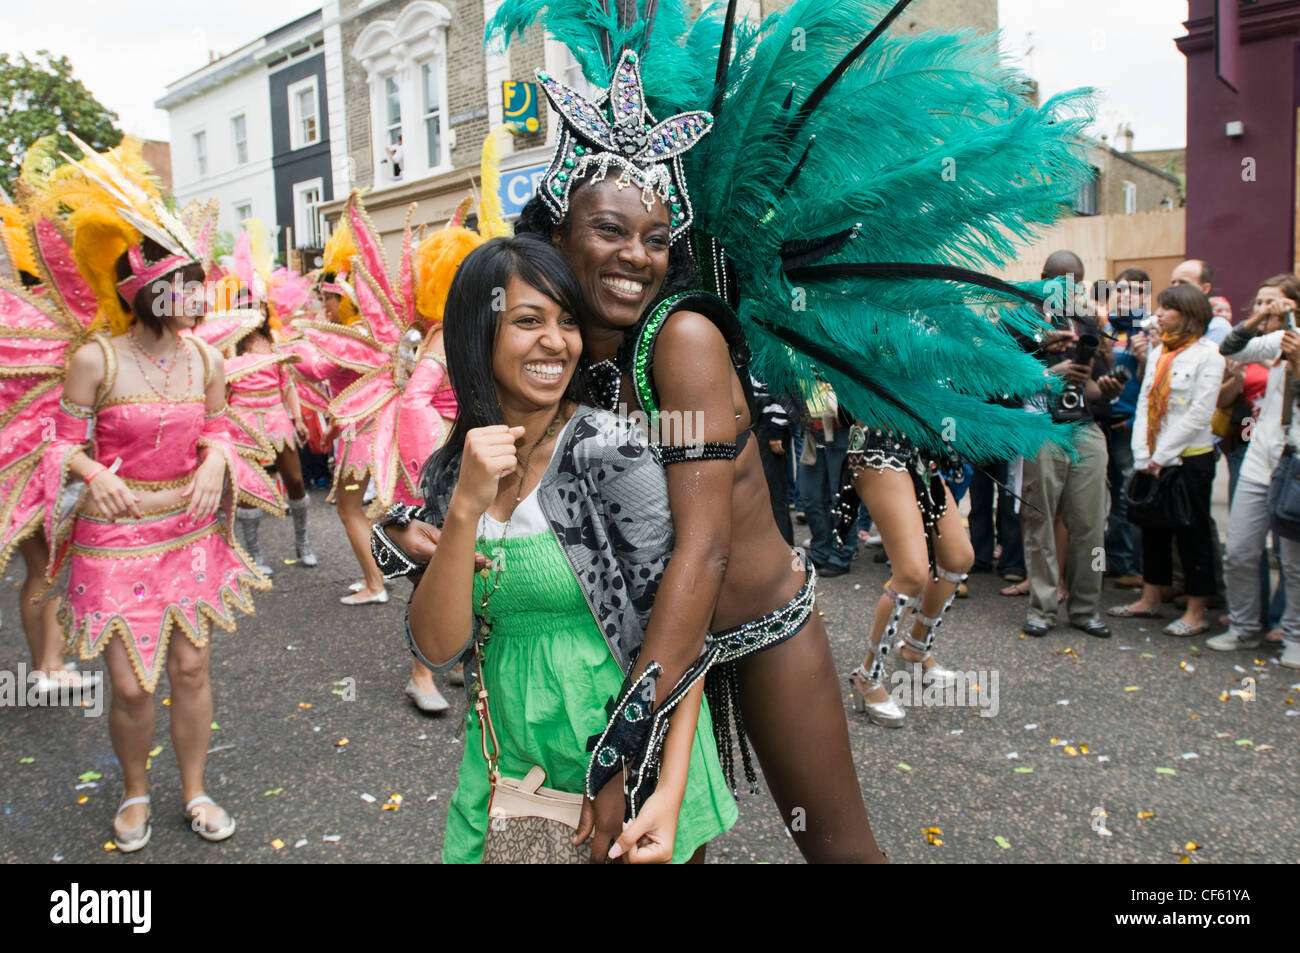 Un spectateur se joint aux festivités au carnaval de Notting Hill. Banque D'Images